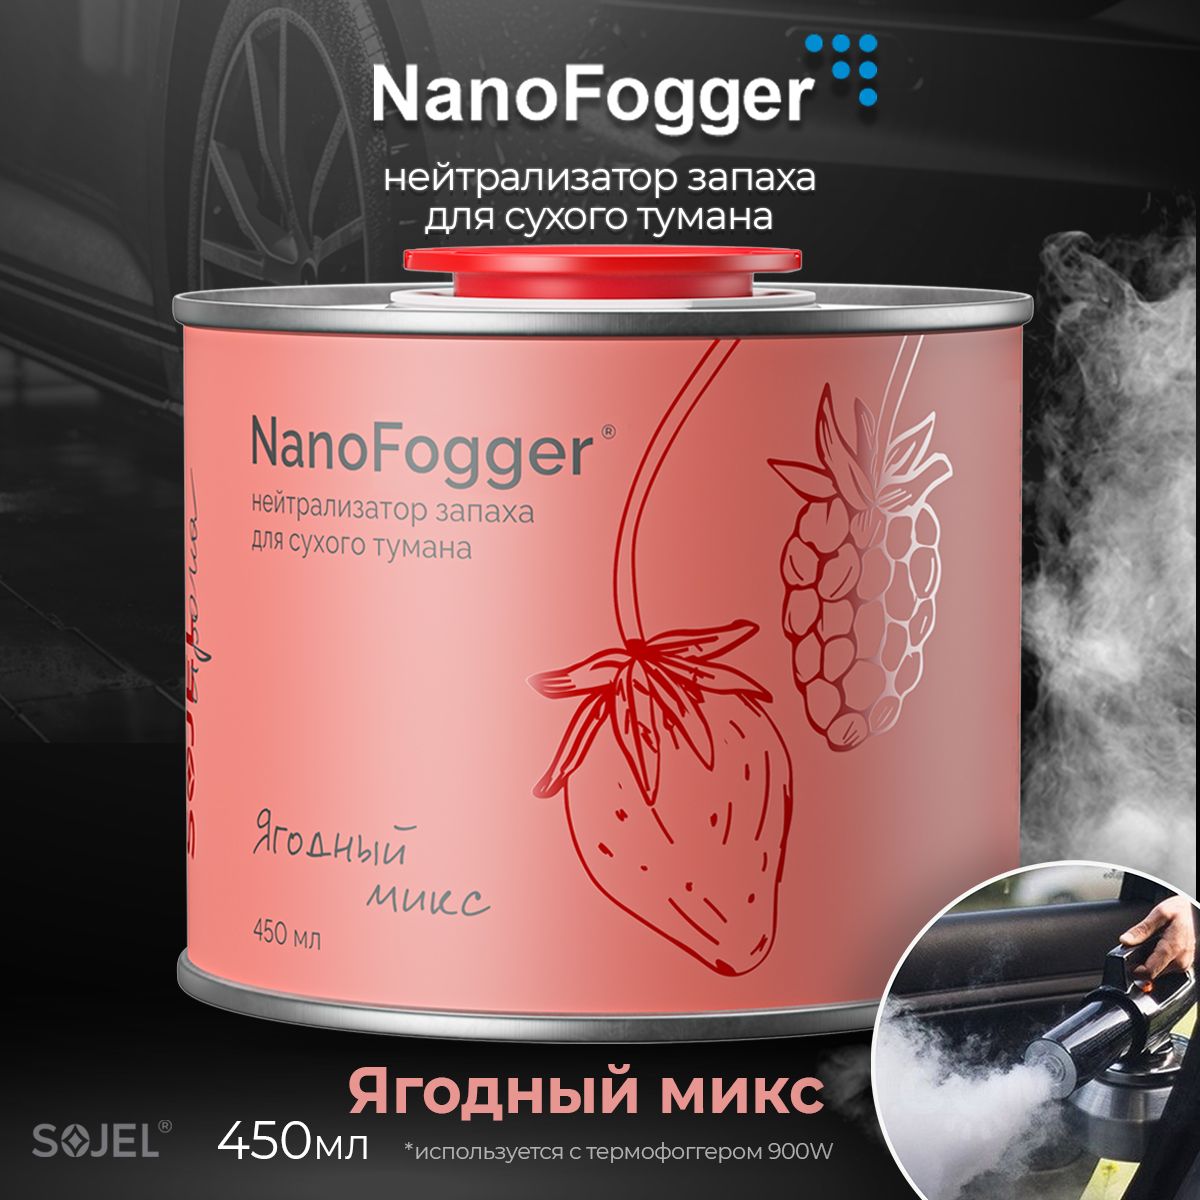 NanoFoggerНейтрализаторзапаховдляавтомобиля,Ягодныймикс,450мл